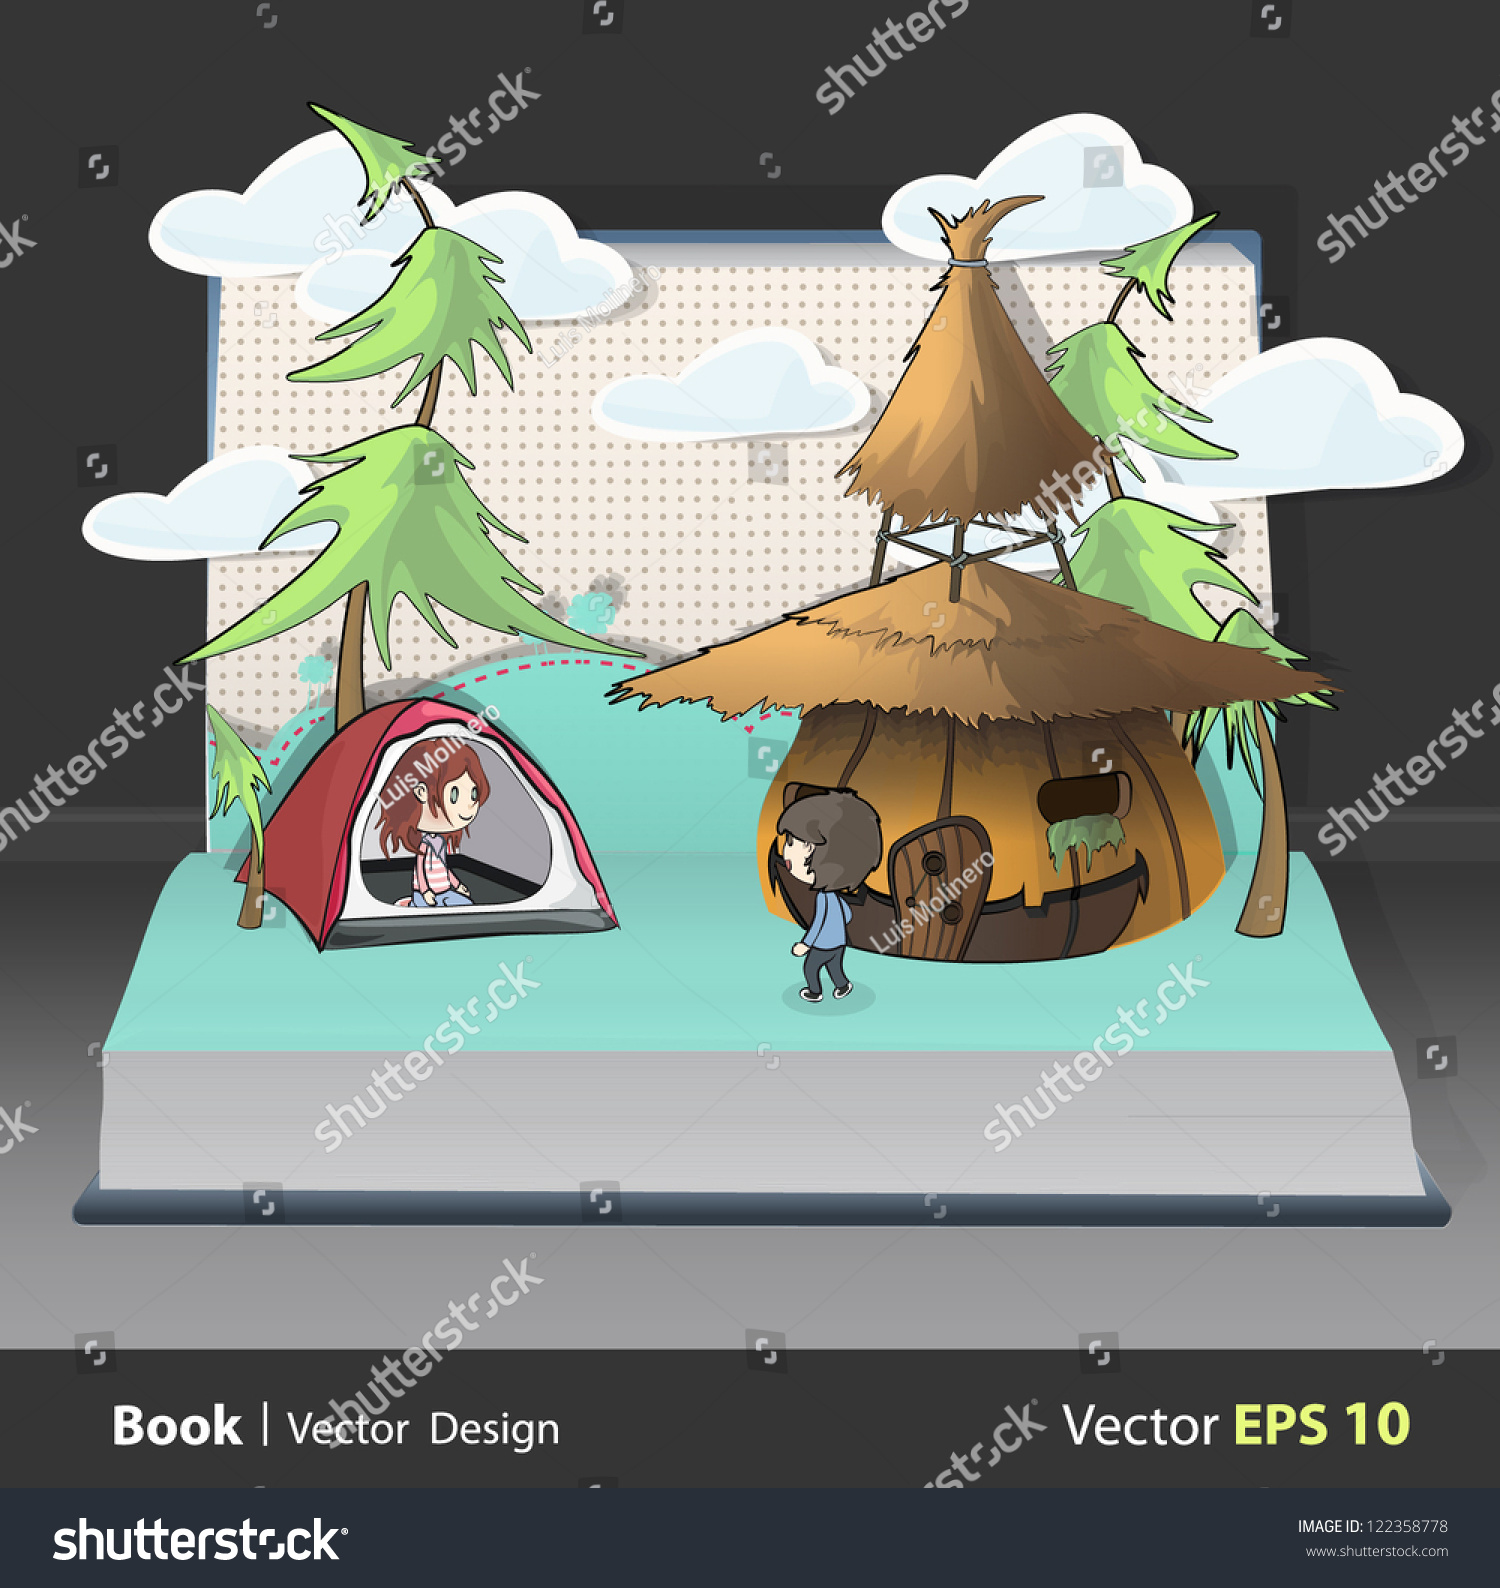 SVG of Children in camping inside a Pop-Up book. Vector illustration. svg